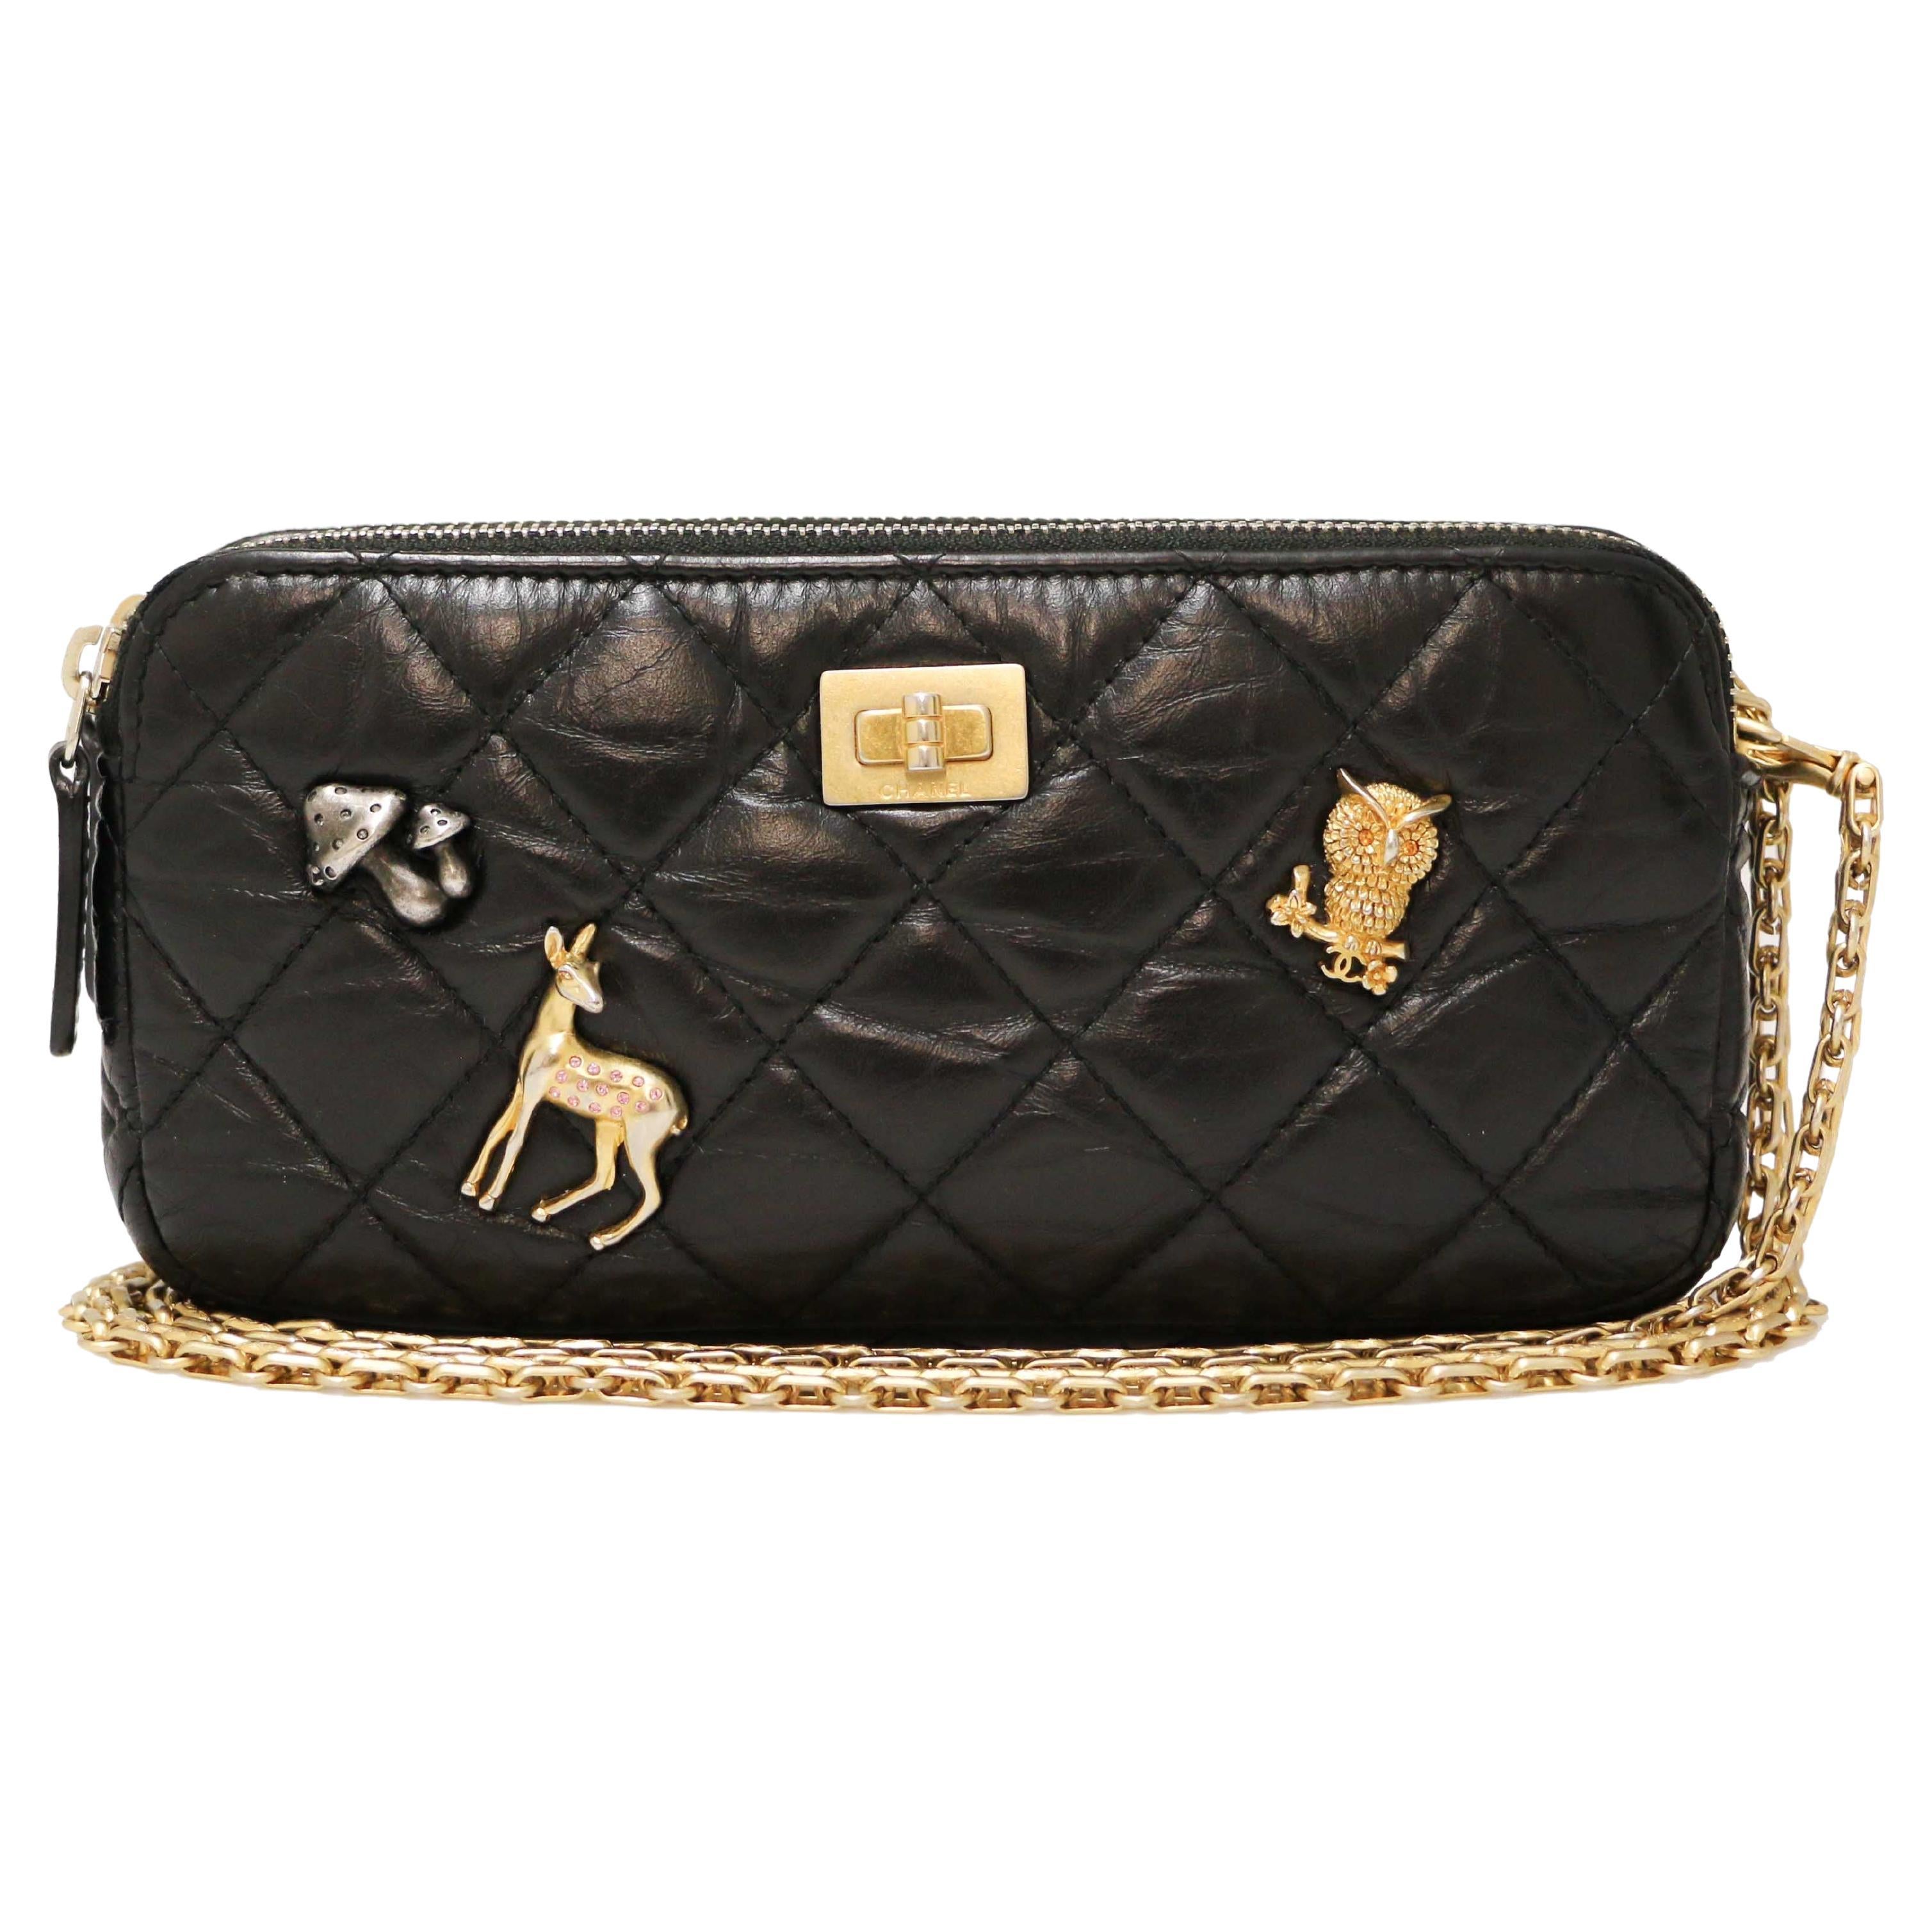 Chanel Charm Handbag - 207 For Sale on 1stDibs